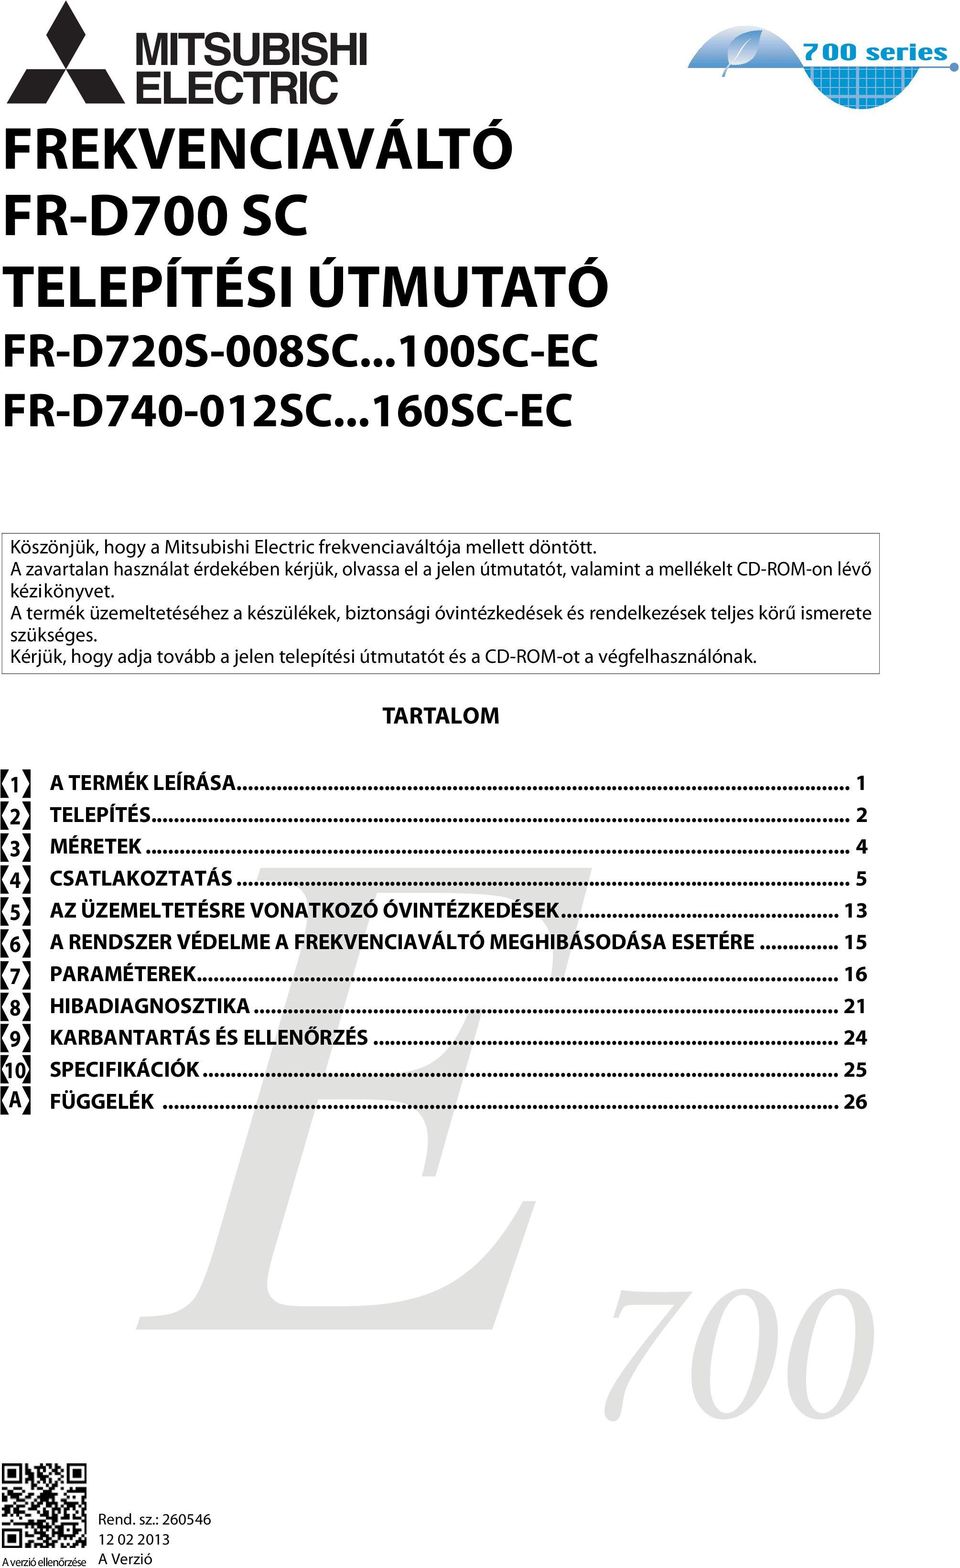 MITSUBISHI ELECTRIC FREKVENCIAVÁLTÓ FR-D700 SC TELEPÍTÉSI ÚTMUTATÓ  FR-D720S-008SC...100SC-EC FR-D SC...160SC-EC - PDF Ingyenes letöltés